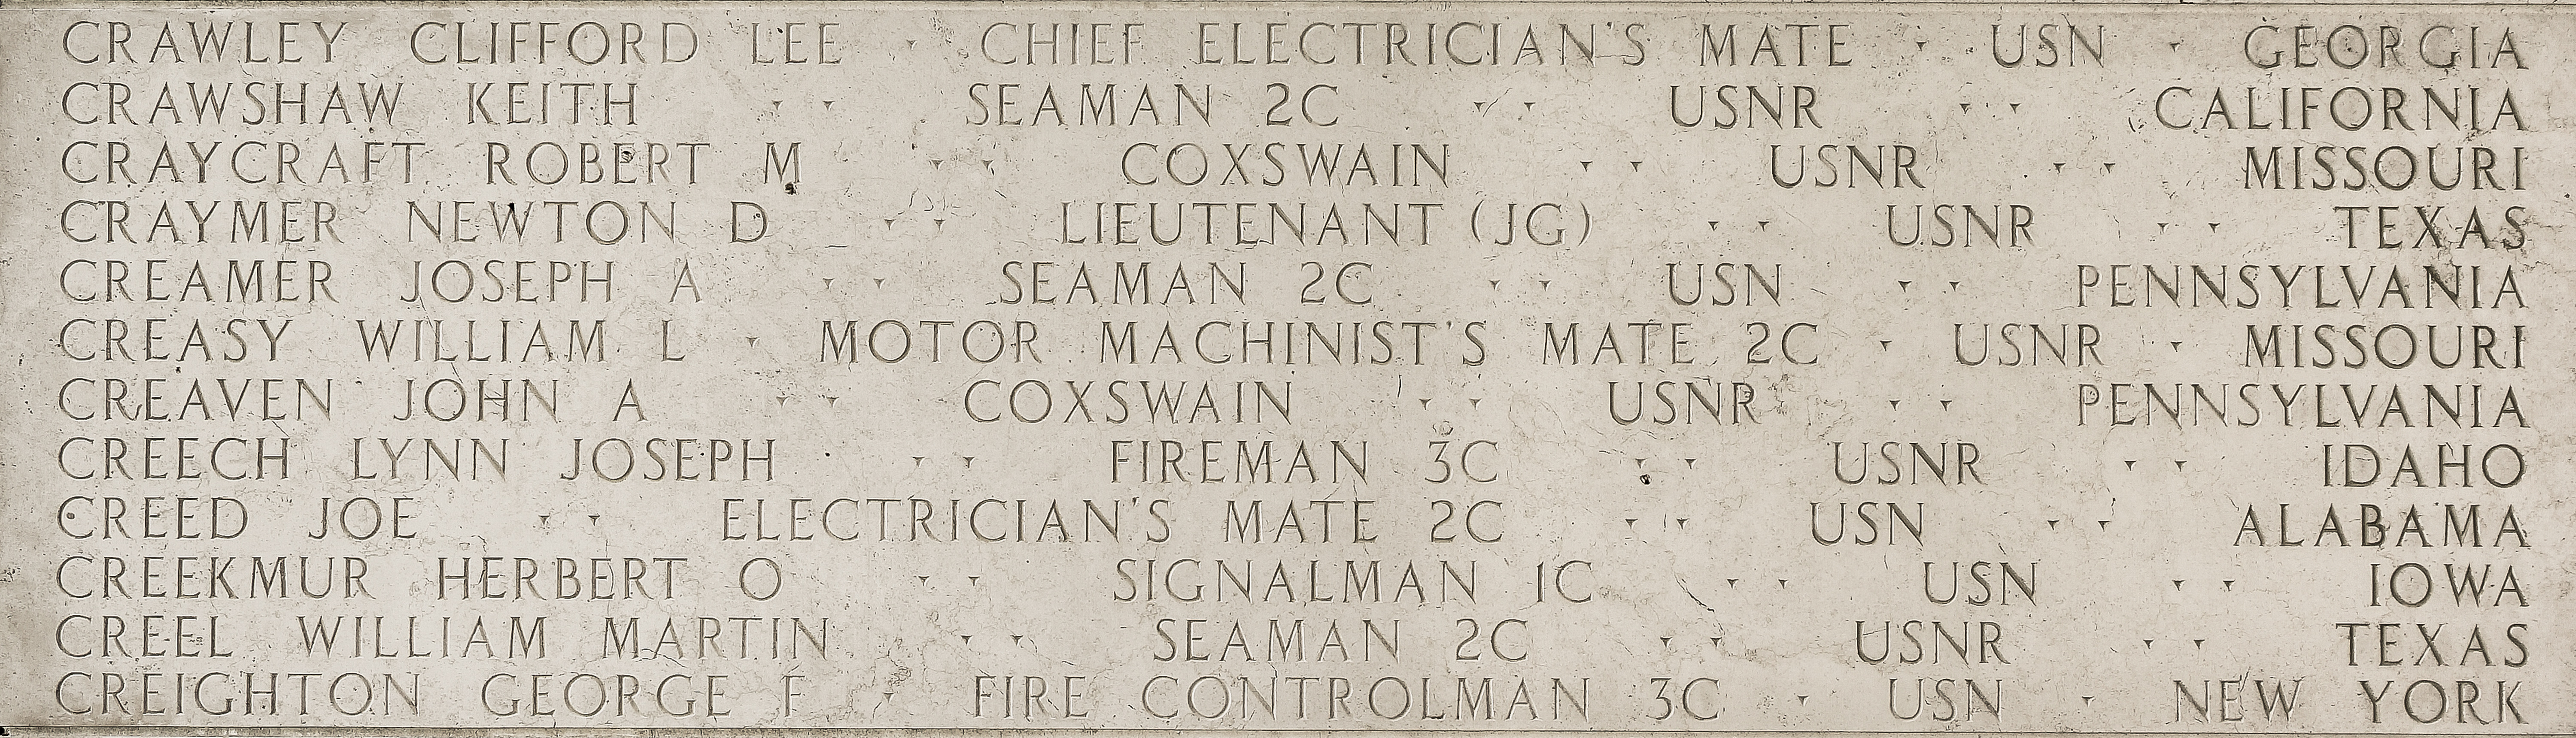 Herbert O. Creekmur, Signalman First Class